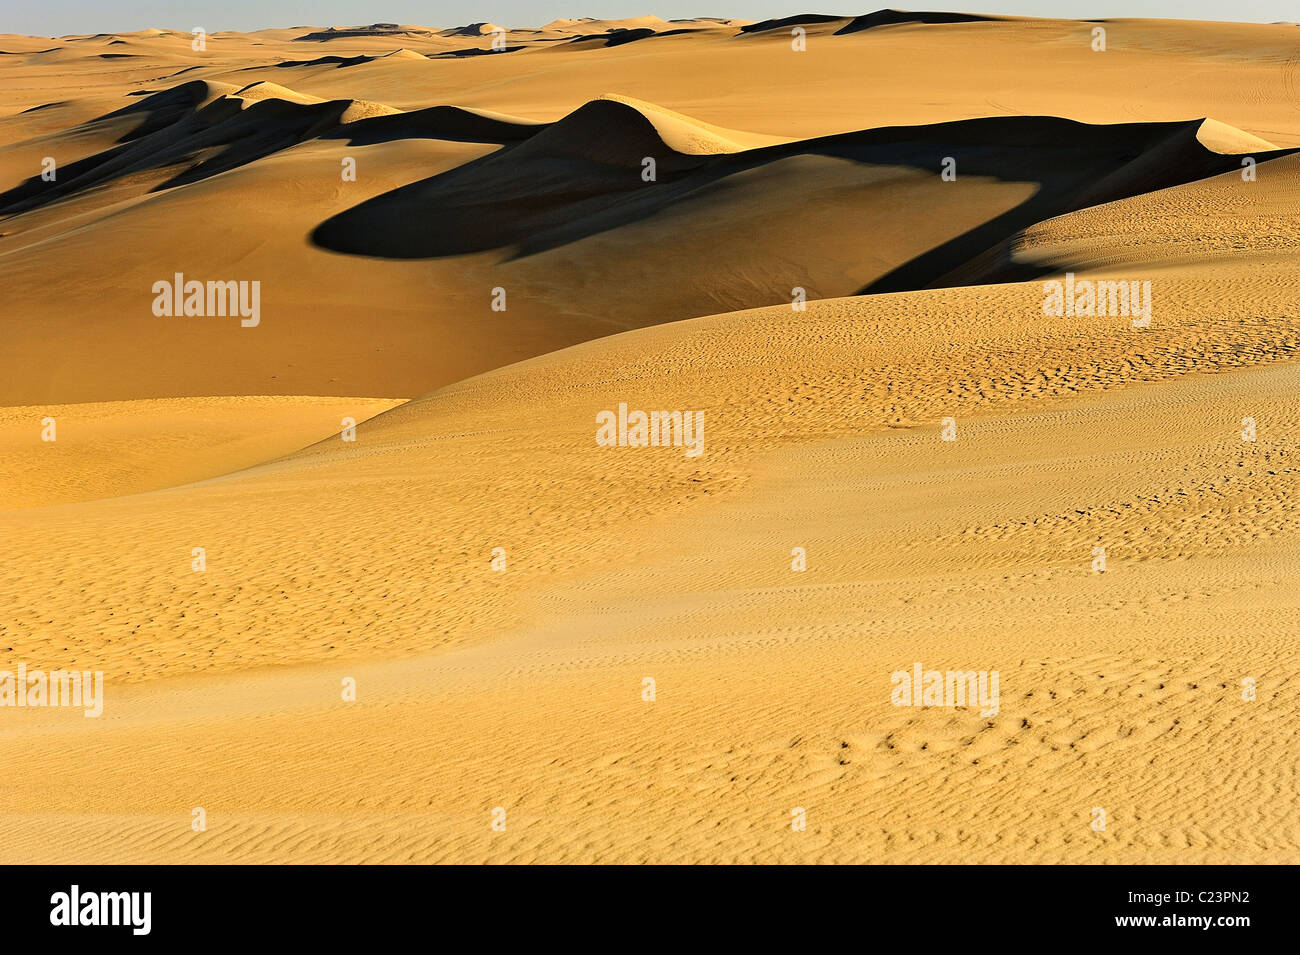 Dunes in the Great Sand Sea, Western Desert (Lybian Desert), Egypt Stock Photo